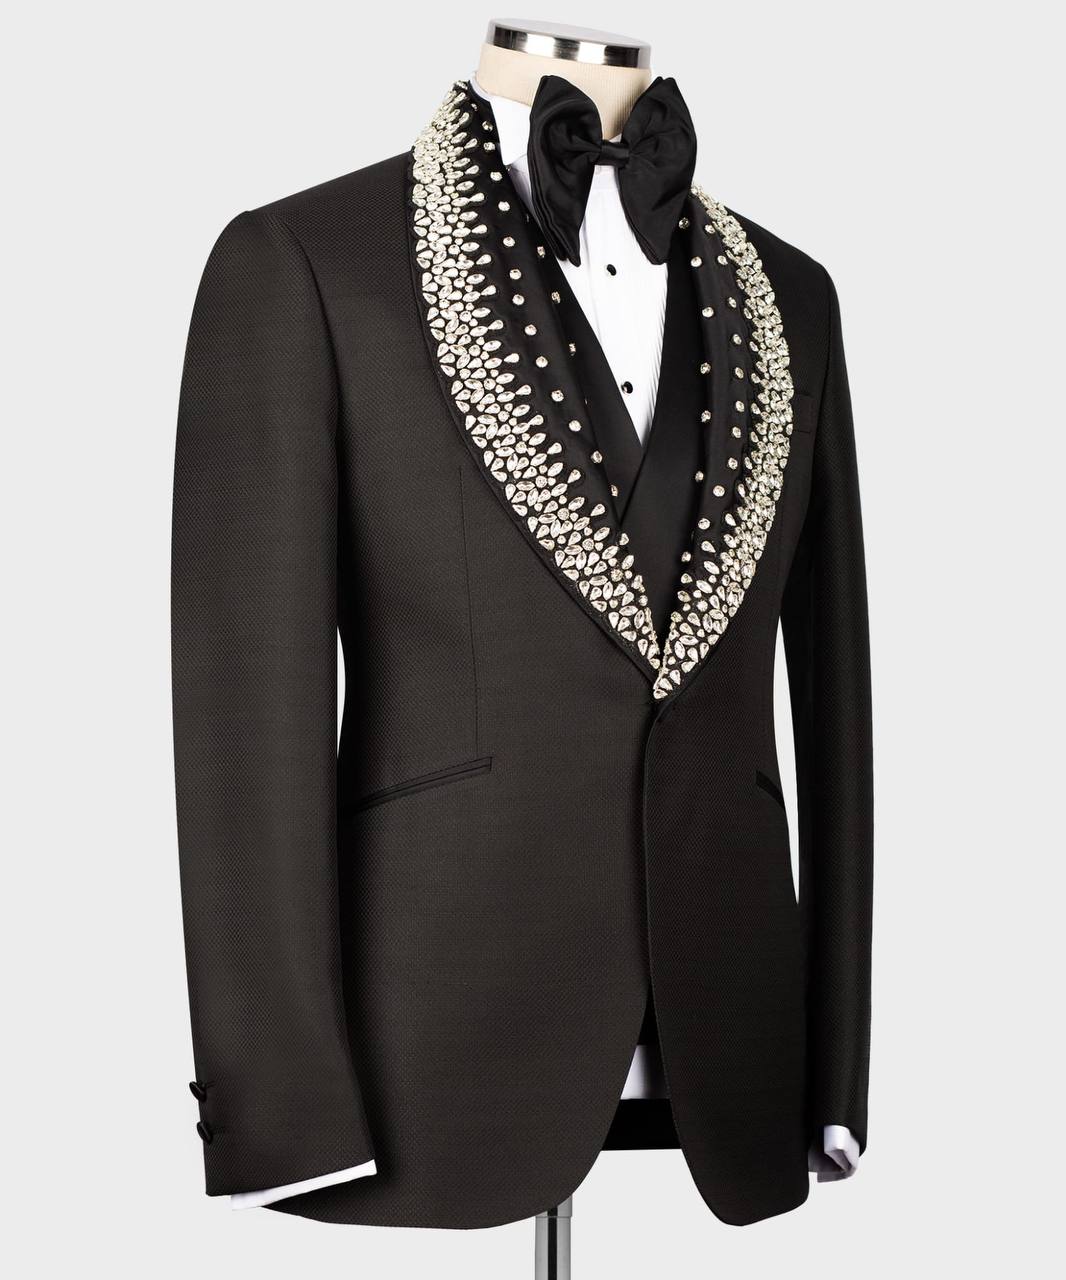 Men's Black Tuxedo, Silver Gem Stoned on Collar